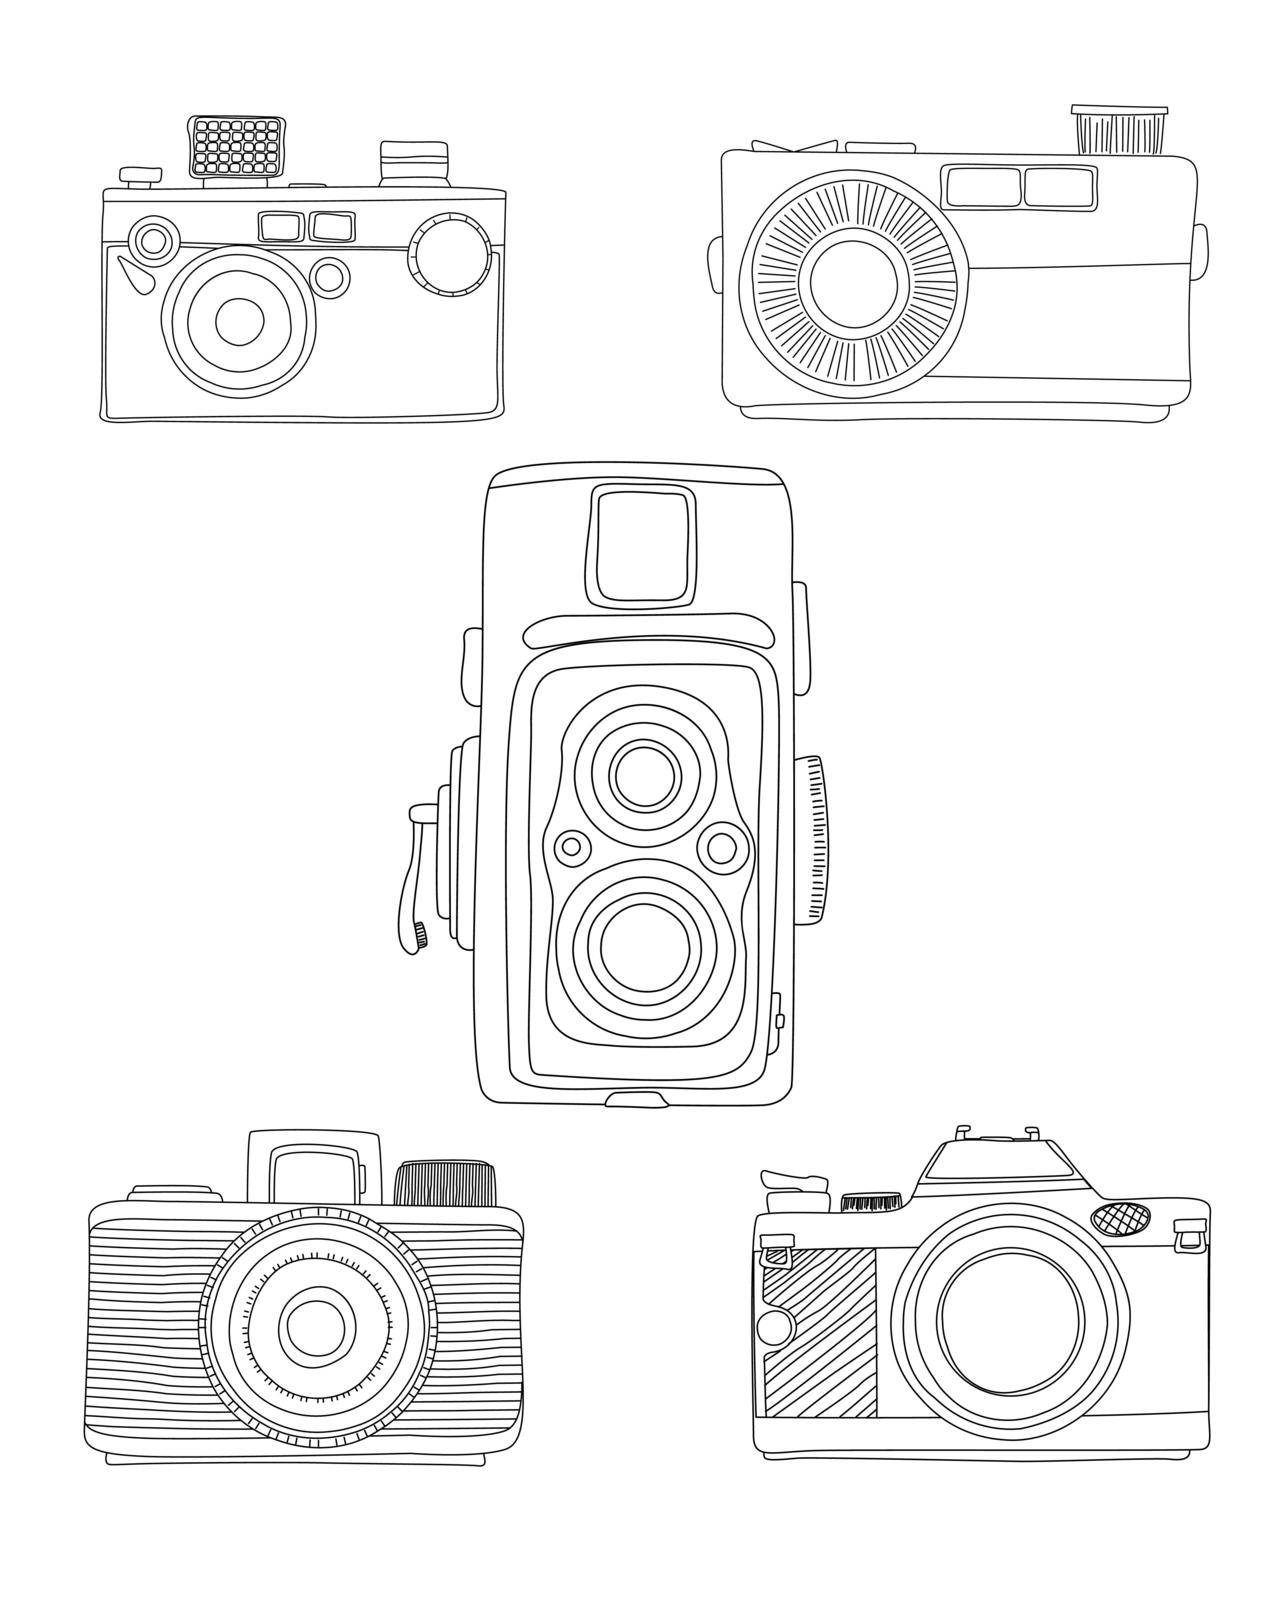 Doodle analog cameras over whitebakcogruns, hand drawn vector